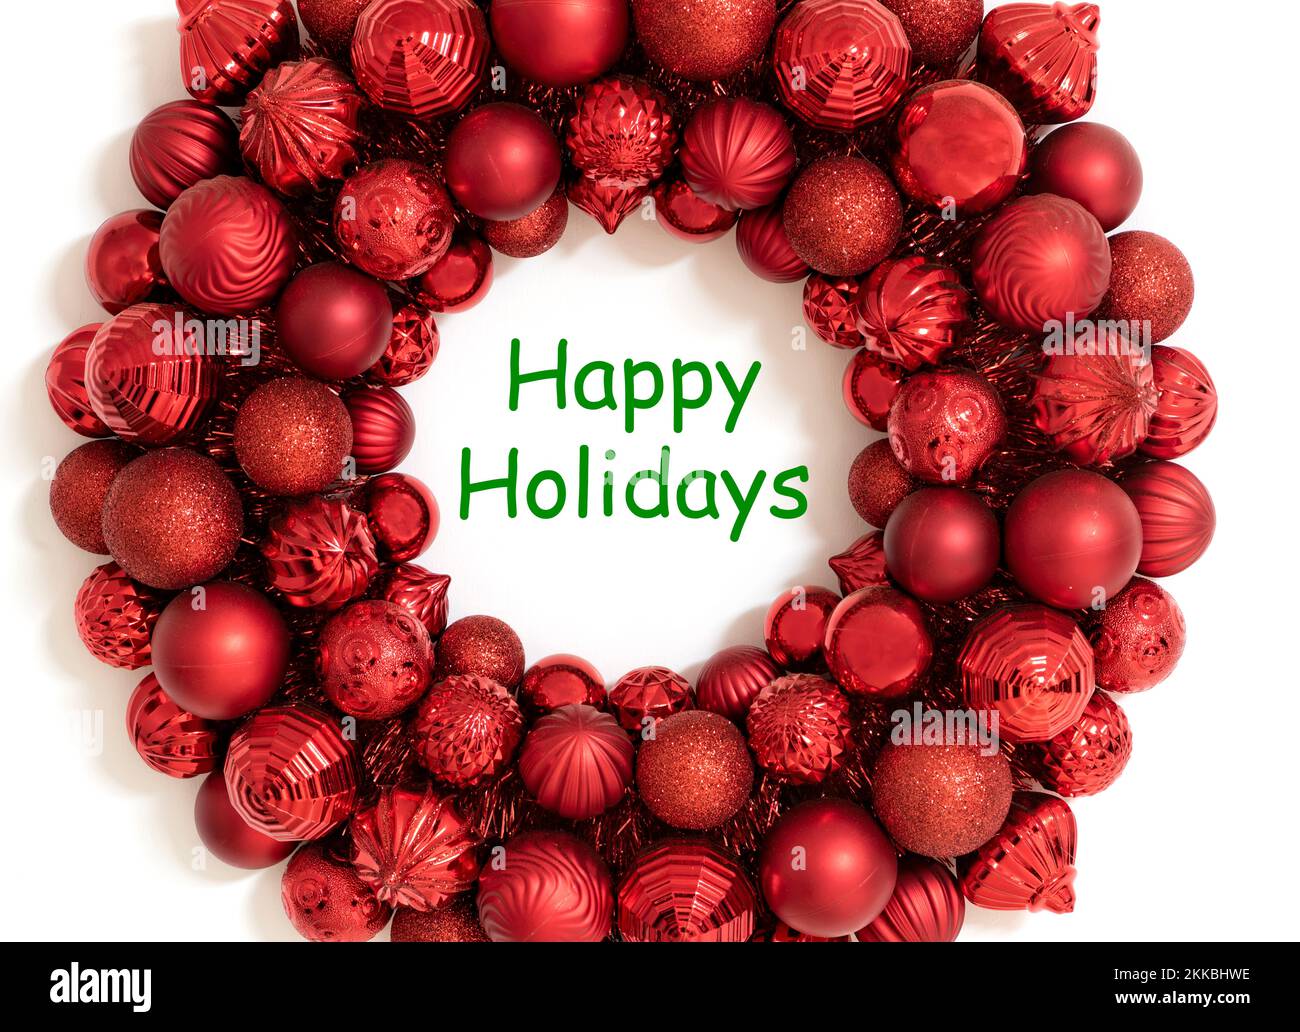 Frohe Weihnachten Grußkarte oder Hintergrund mit grünem Text zu frohen Feiertagen. Roter Kranz aus roten weihnachtsschmuck. Stockfoto